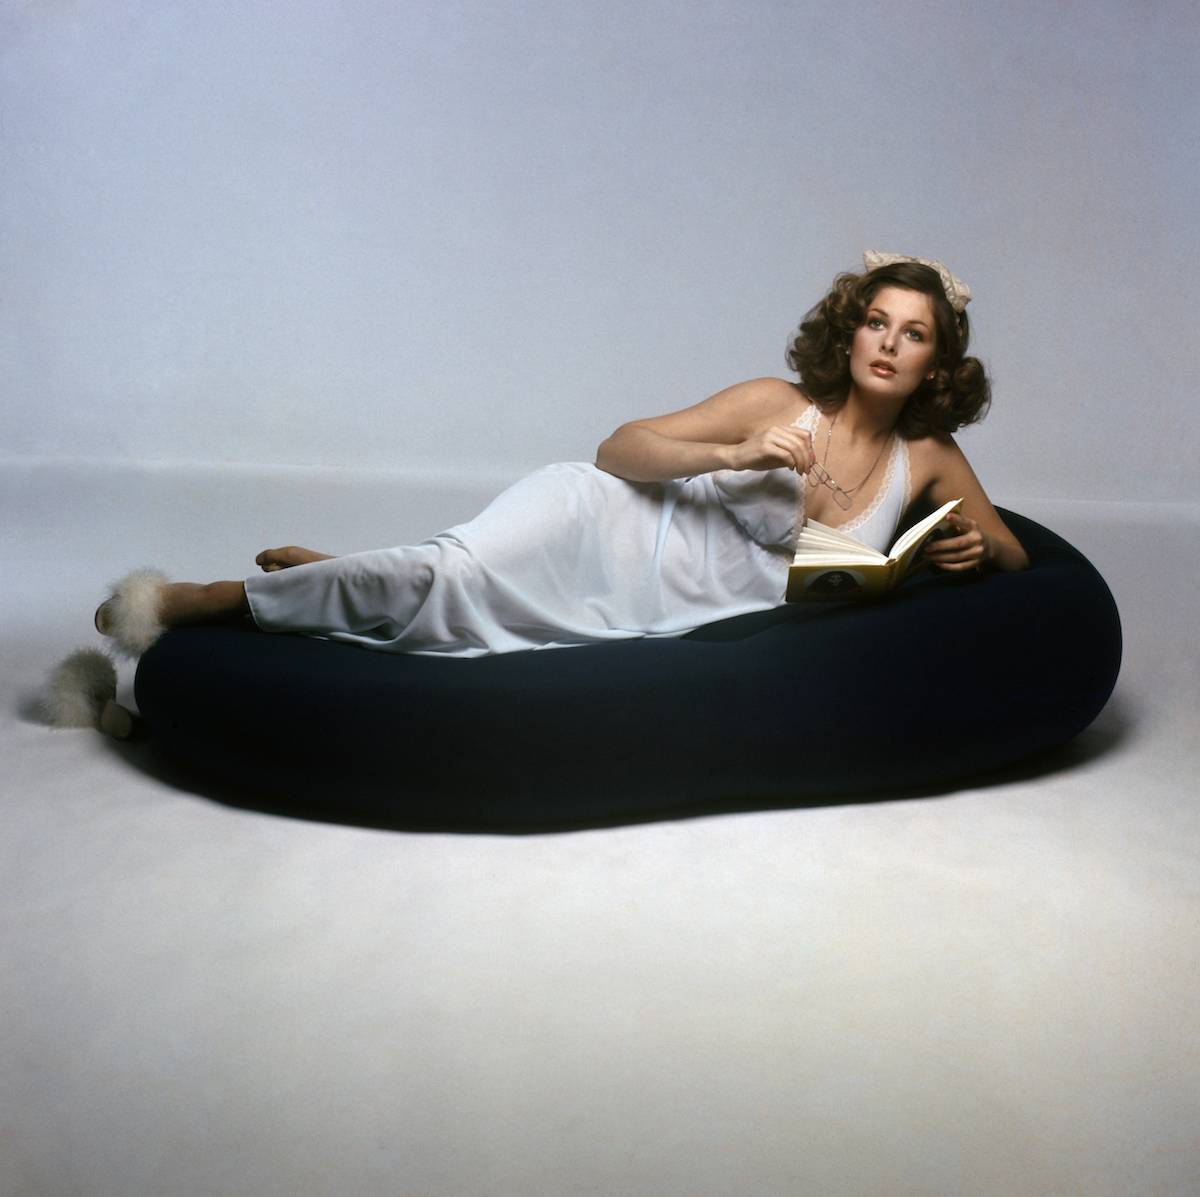 Christina Ferrare dla Vogue, 1974 rok (Fot. Francesco Scavullo/Condé Nast via Getty Images)